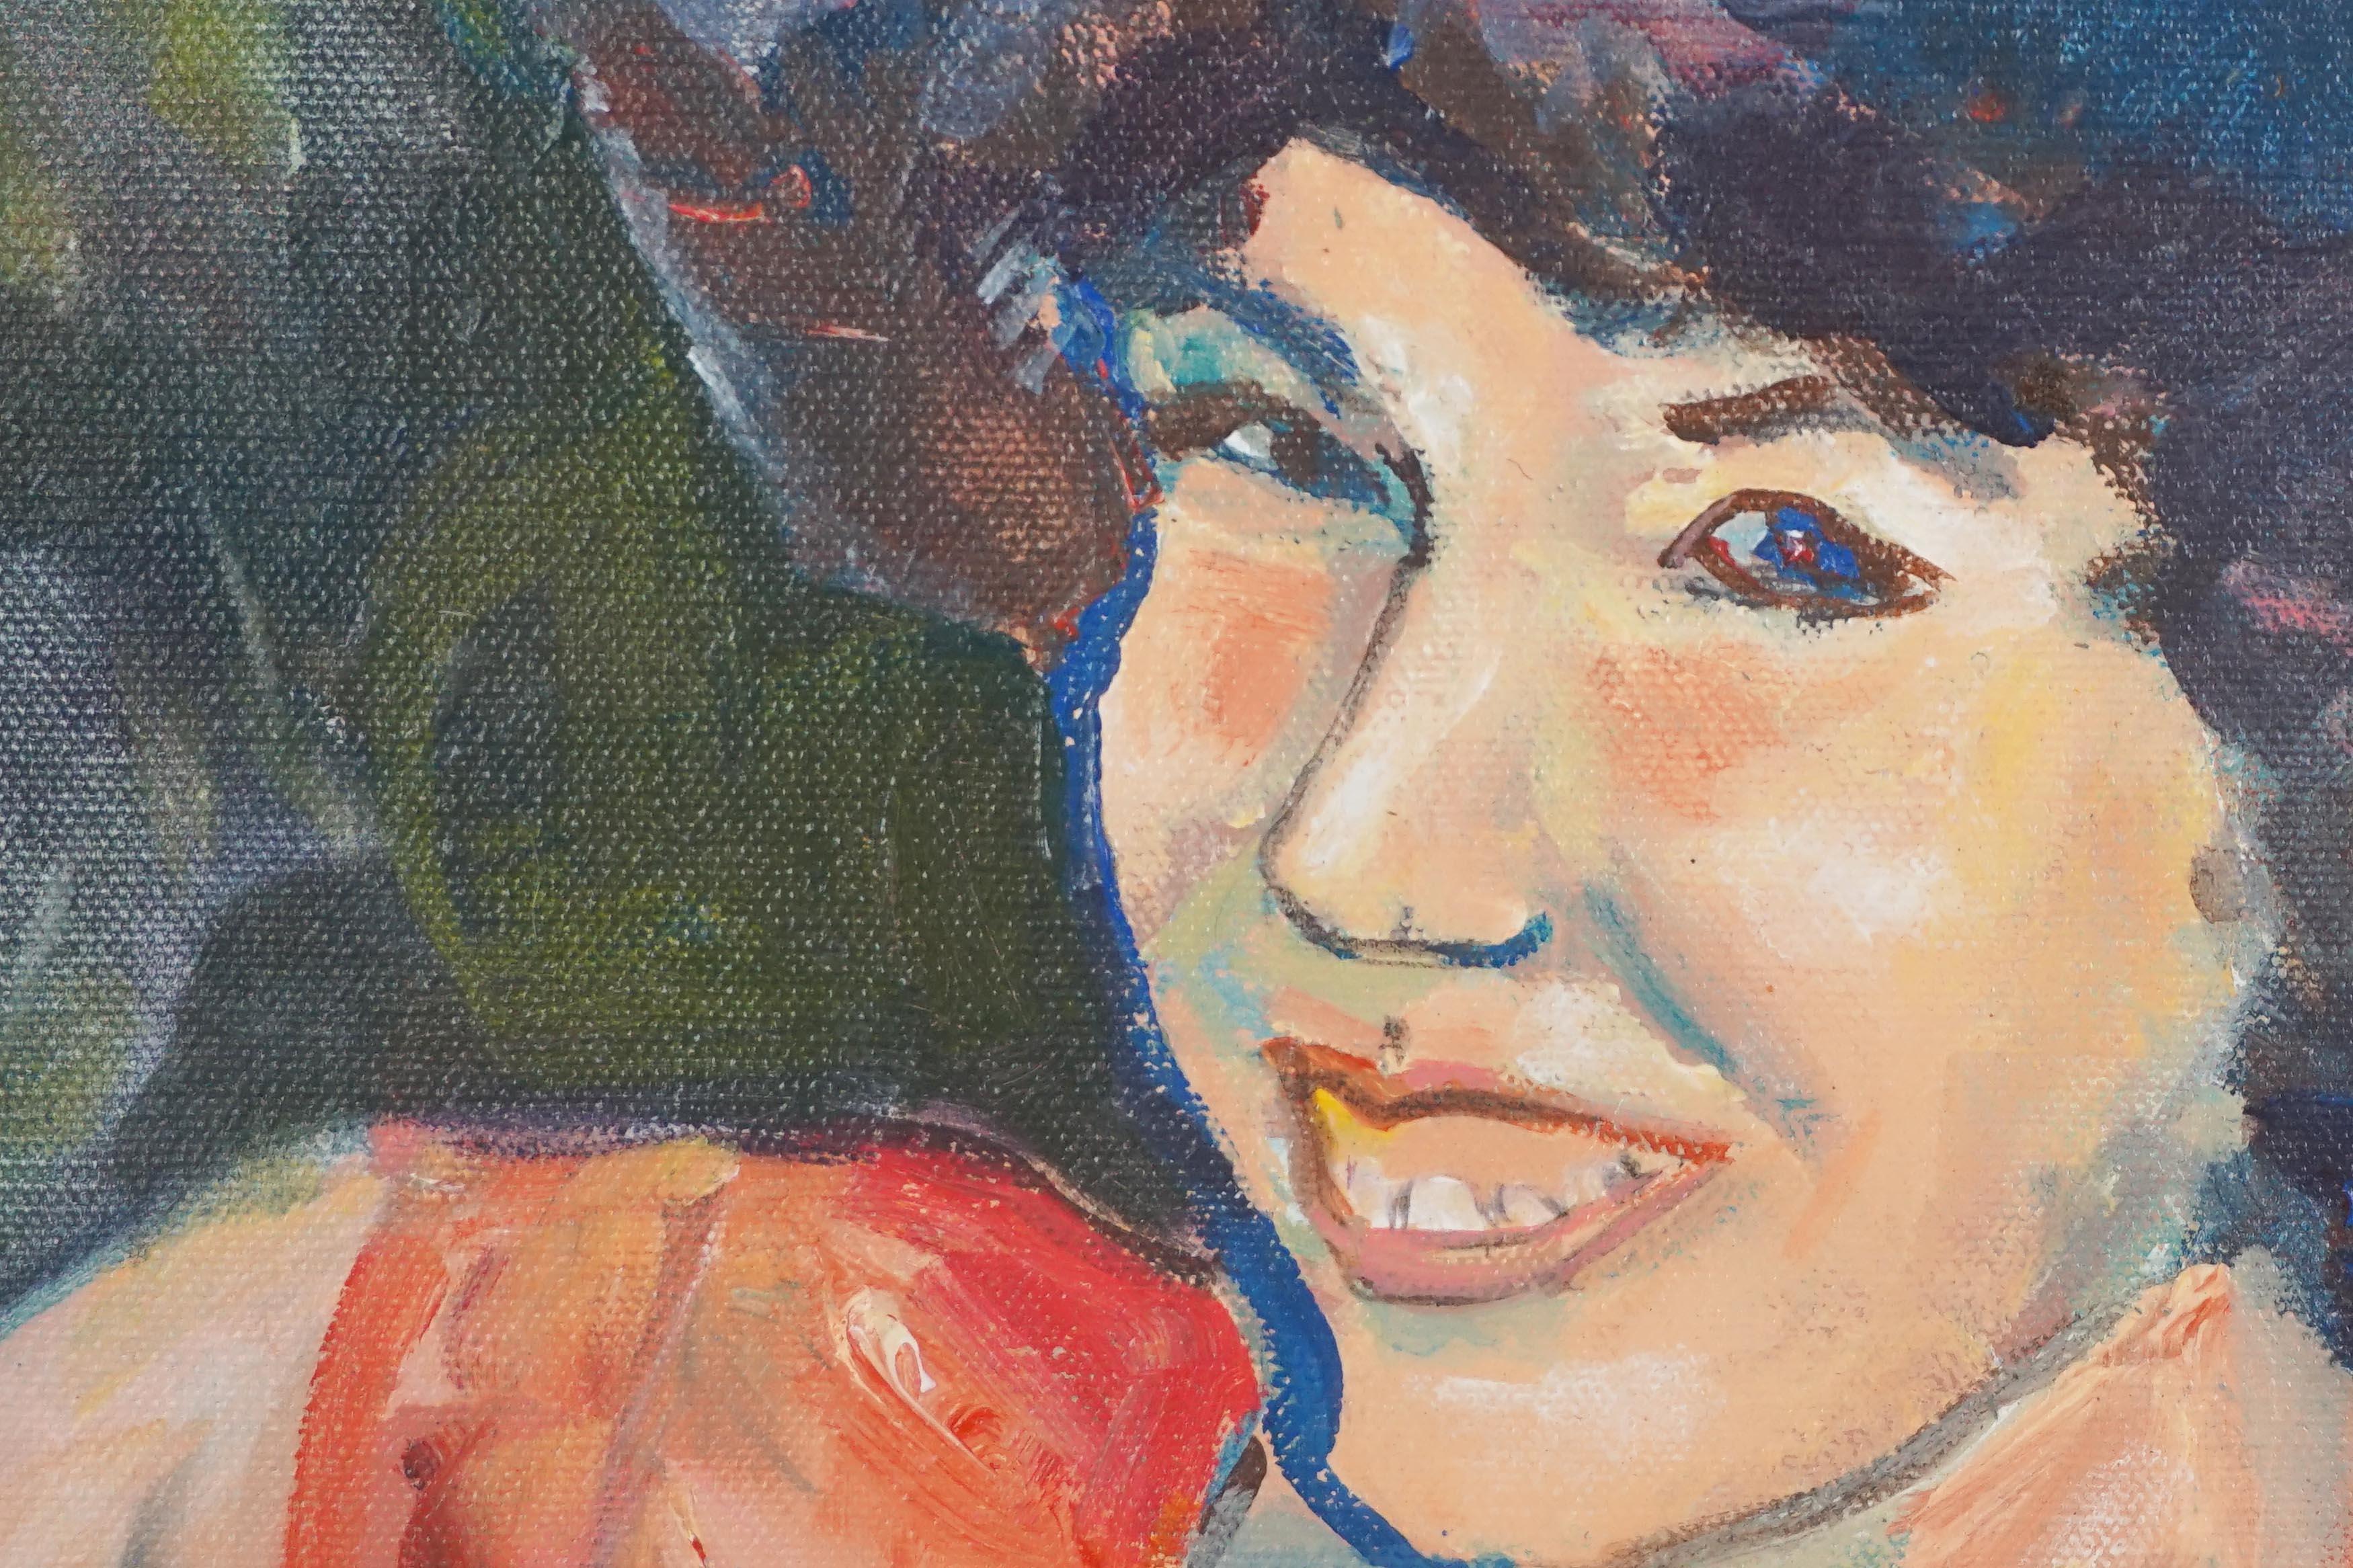 Modernes Porträt eines jungen Mädchens namens Cathy Gutman von der amerikanischen Malerin Patricia Gren Hayes (geb. 1932), 1982. 

Signiert und datiert in der linken unteren Ecke und verso
Provenienz: Erworben als Teil einer größeren Sammlung von